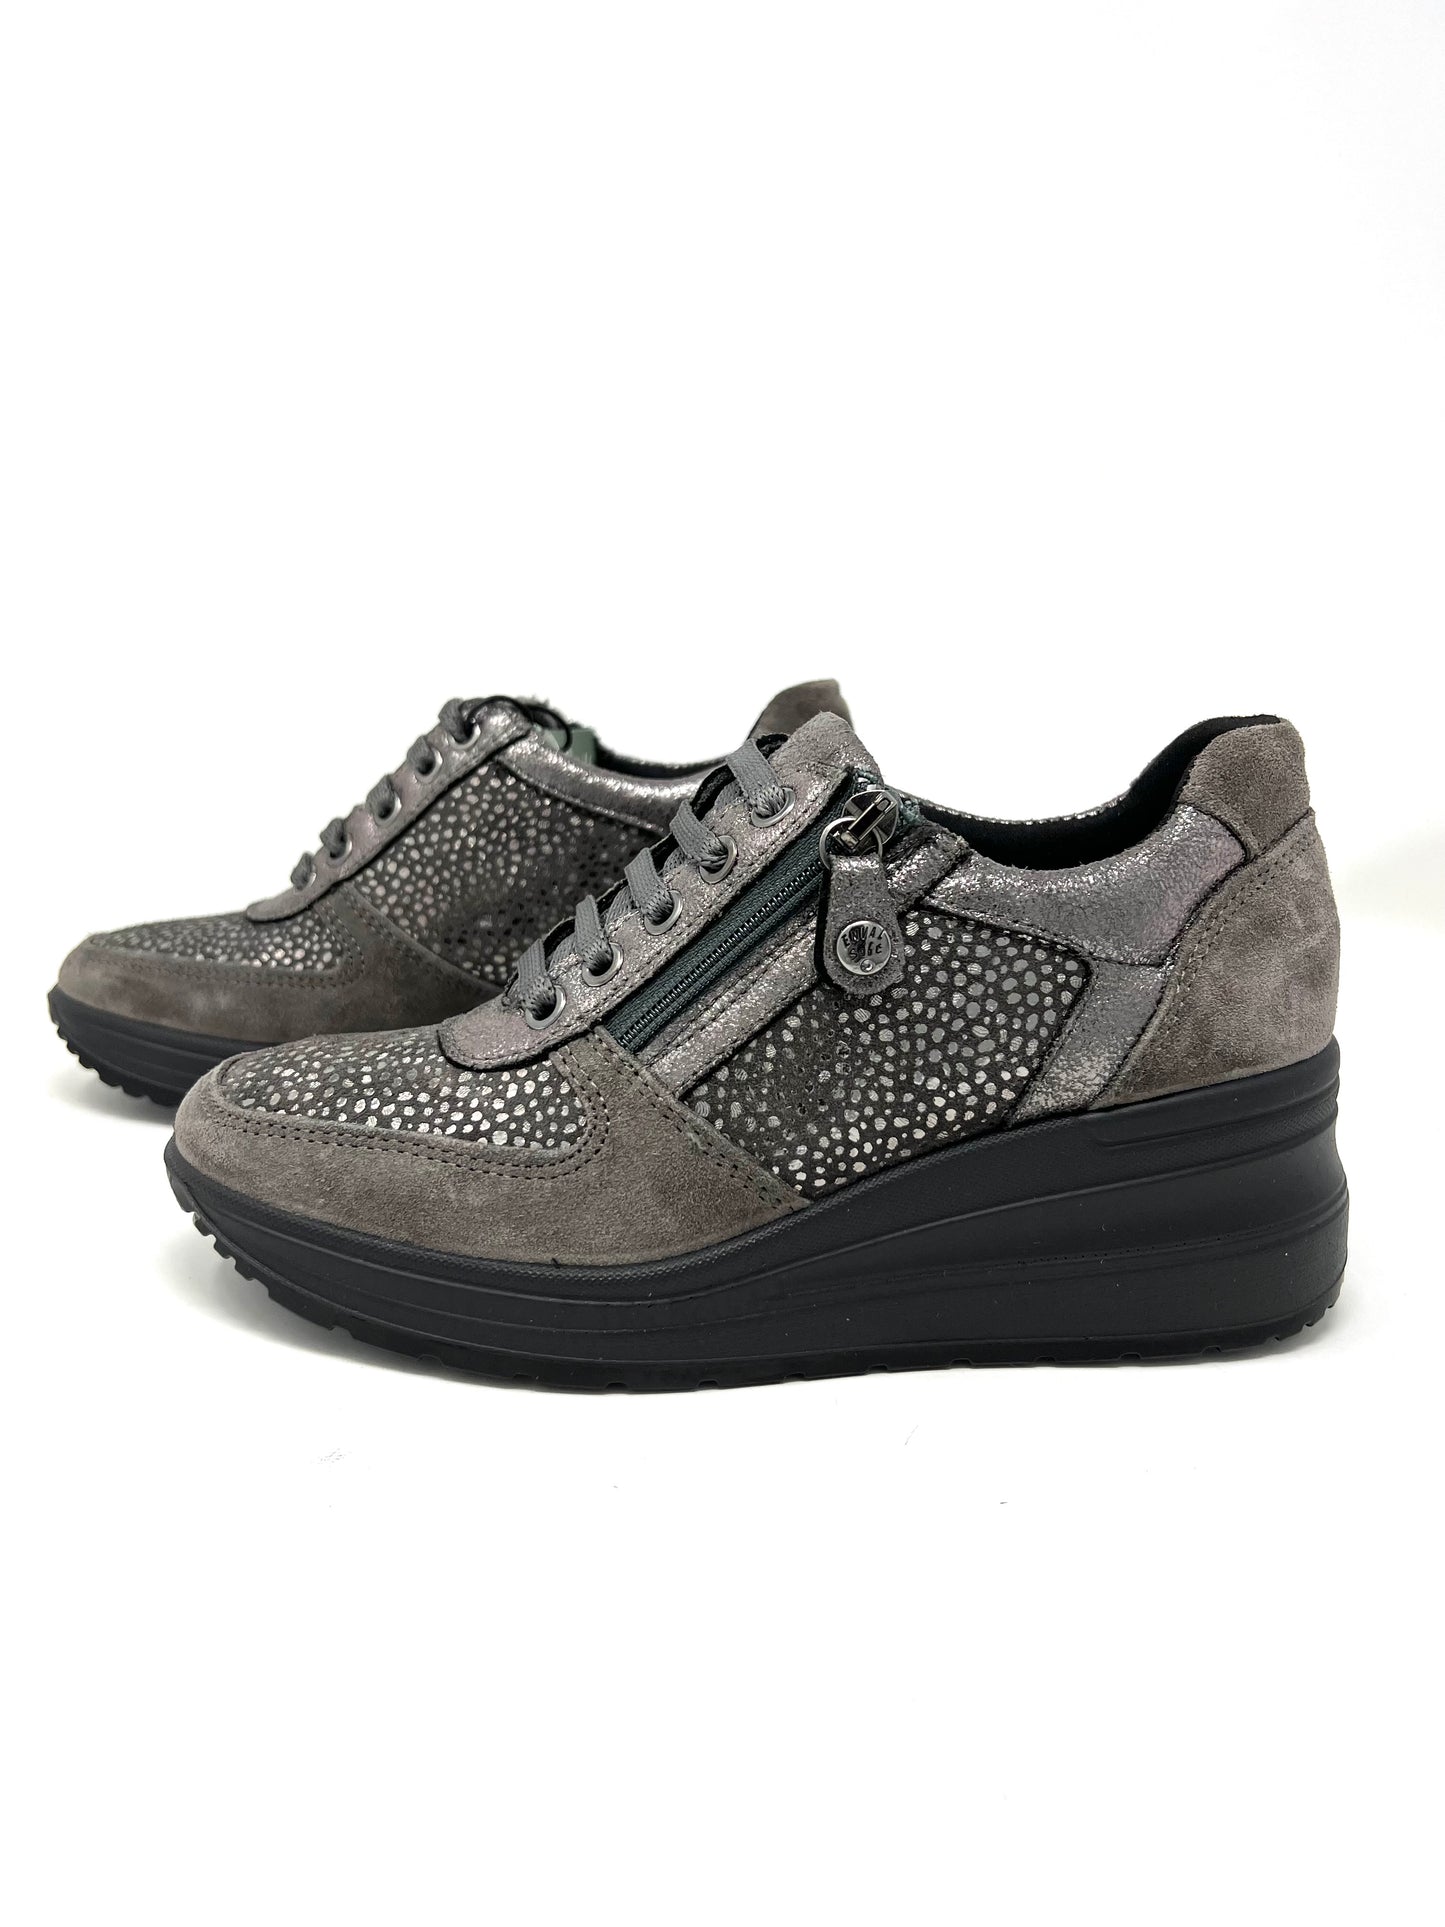 Sneakers scamosciata grigio inserti animalier 2760111